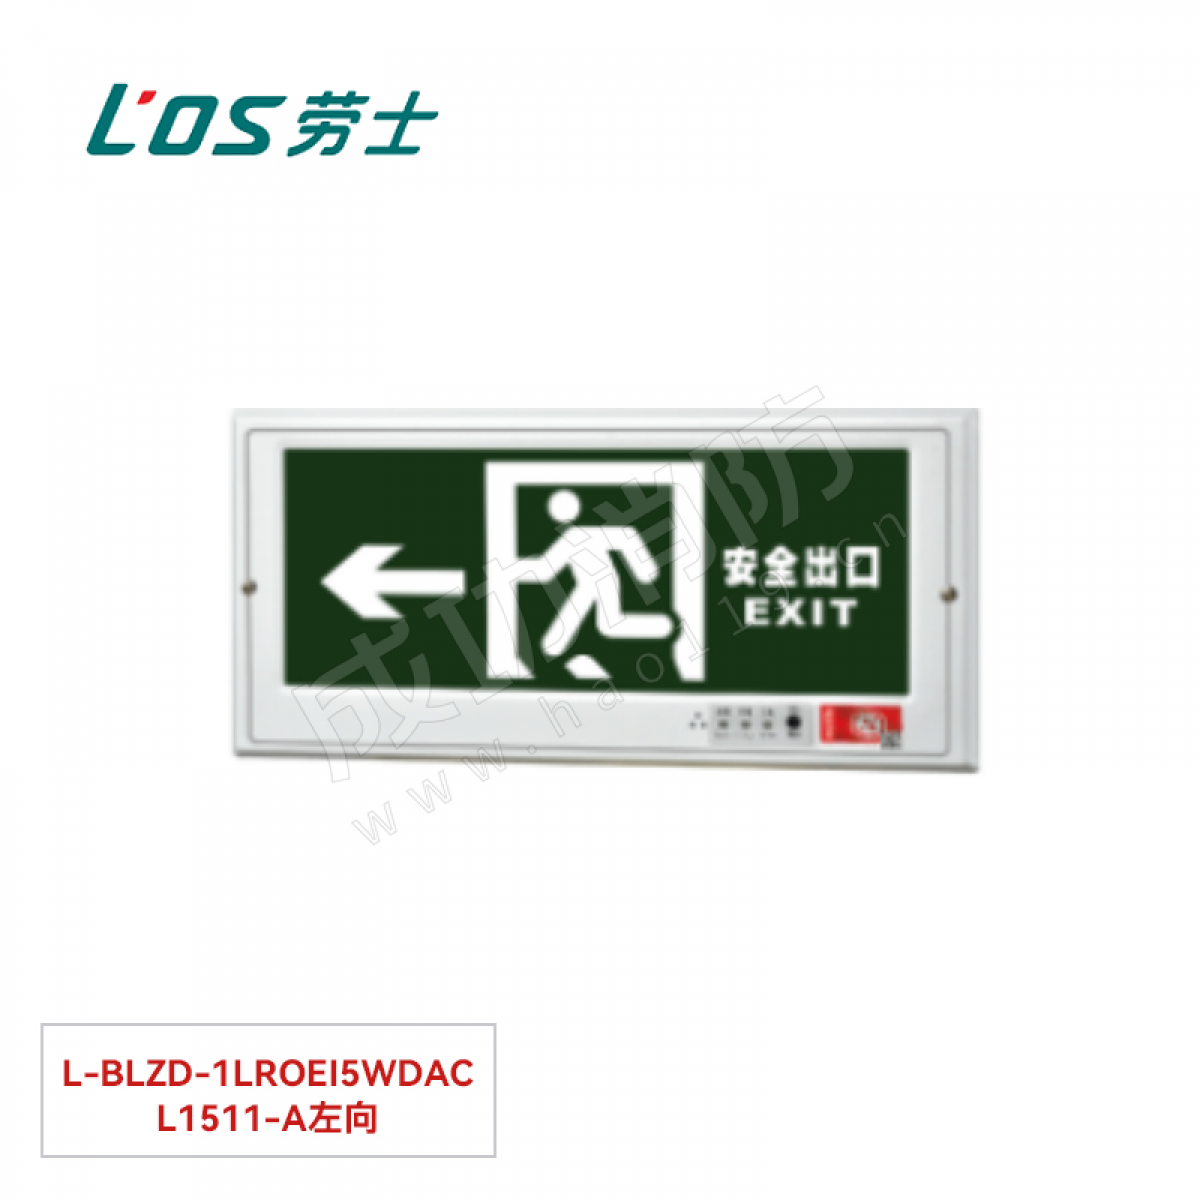 劳士 消防应急标志灯(嵌墙安装) L-BLZD-1LROEⅠ5WDBA L4501左向